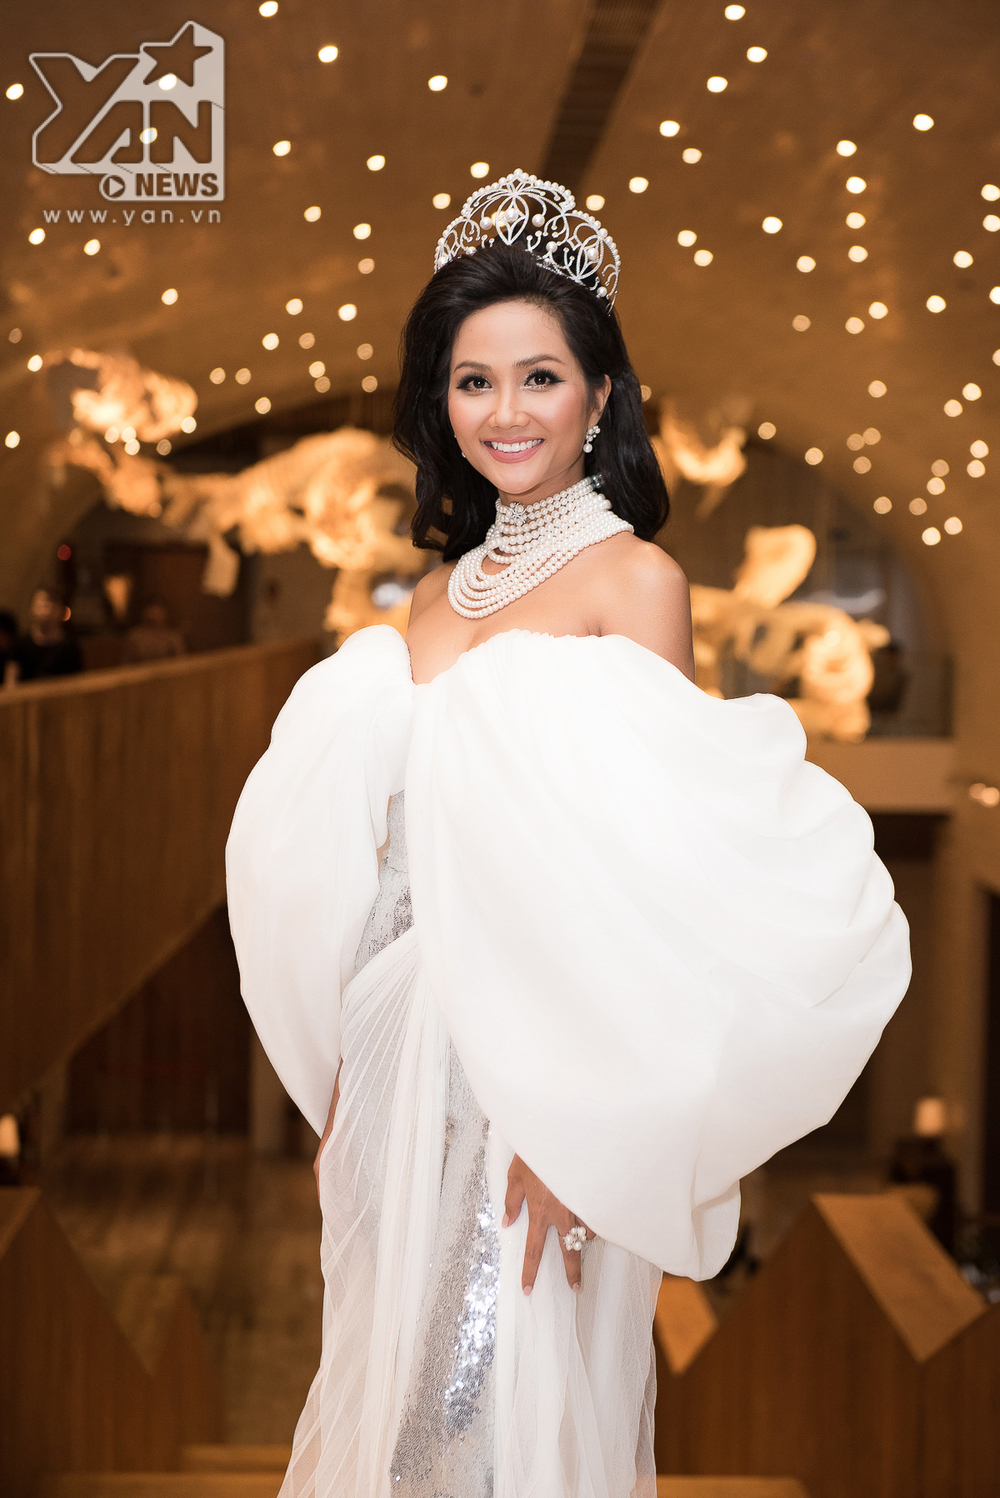 H'Hen Niê cùng dàn người đẹp Miss Univese làm phù dâu cho Hoa hậu Thái Lan - Tin sao Viet - Tin tuc sao Viet - Scandal sao Viet - Tin tuc cua Sao - Tin cua Sao